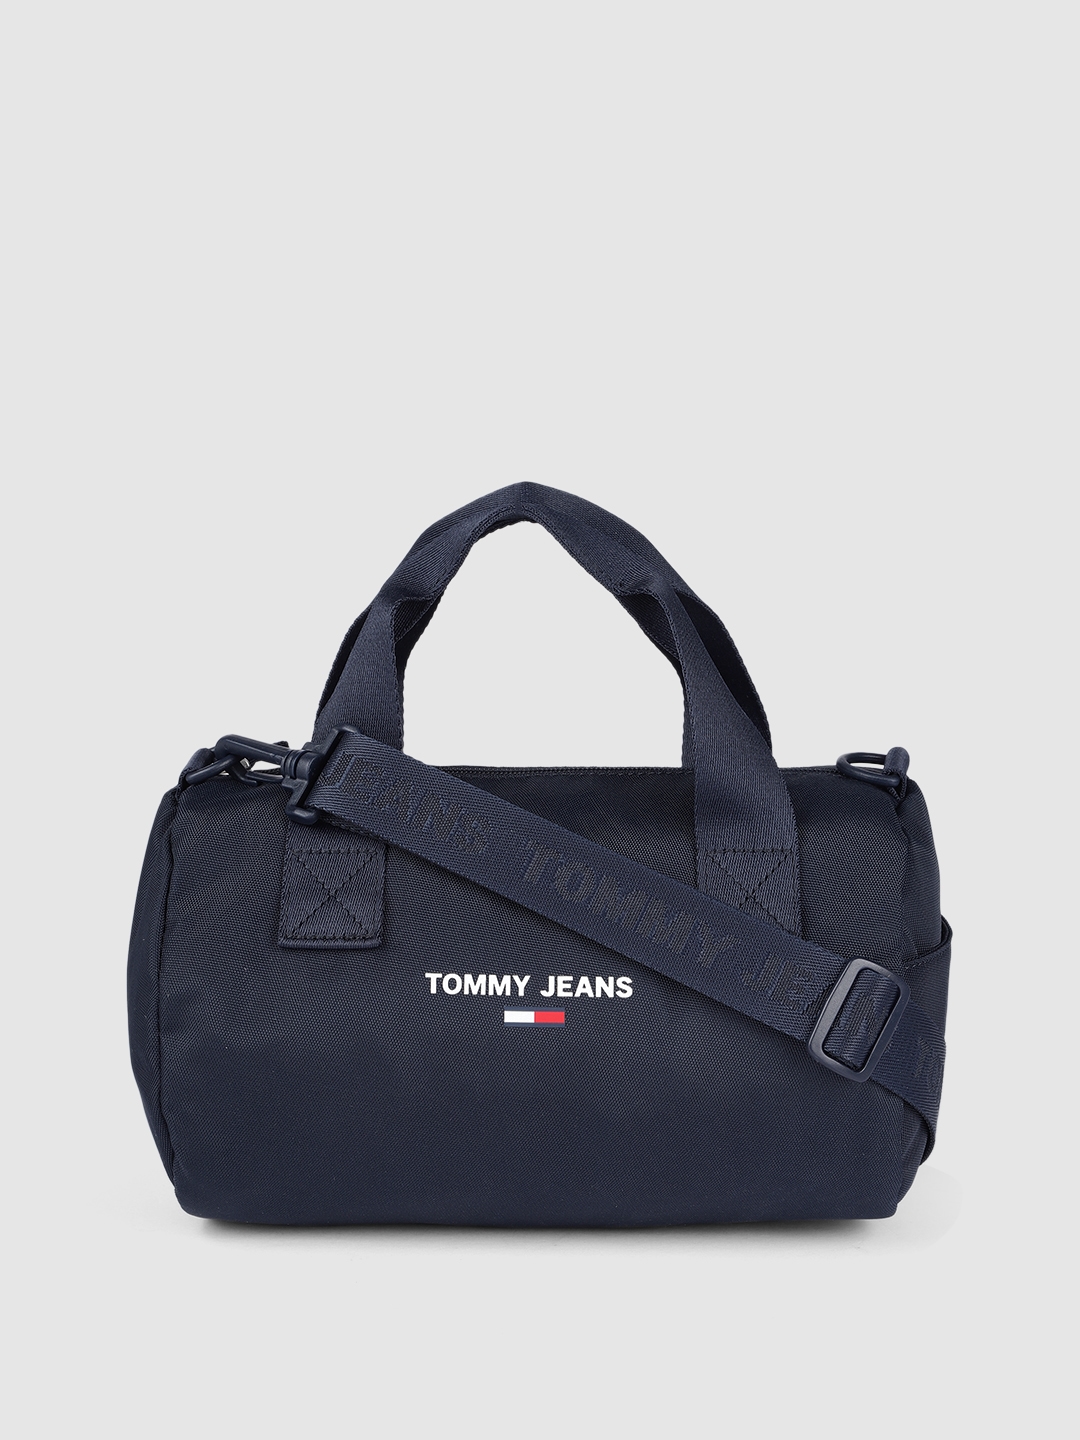 Tommy Hilfiger Navy Blue Structured Handheld Bag